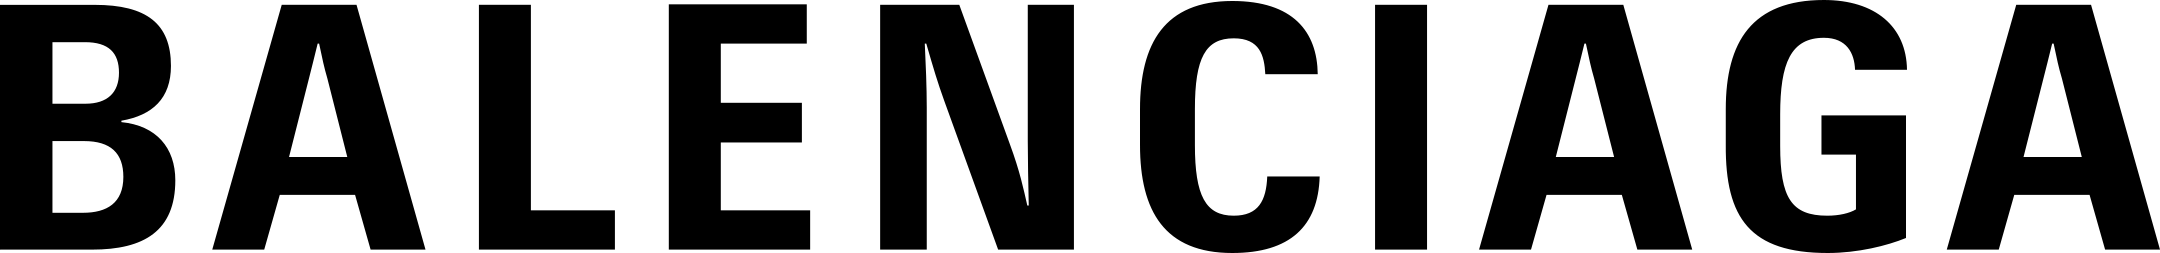 Balenciaga Logo Transparent